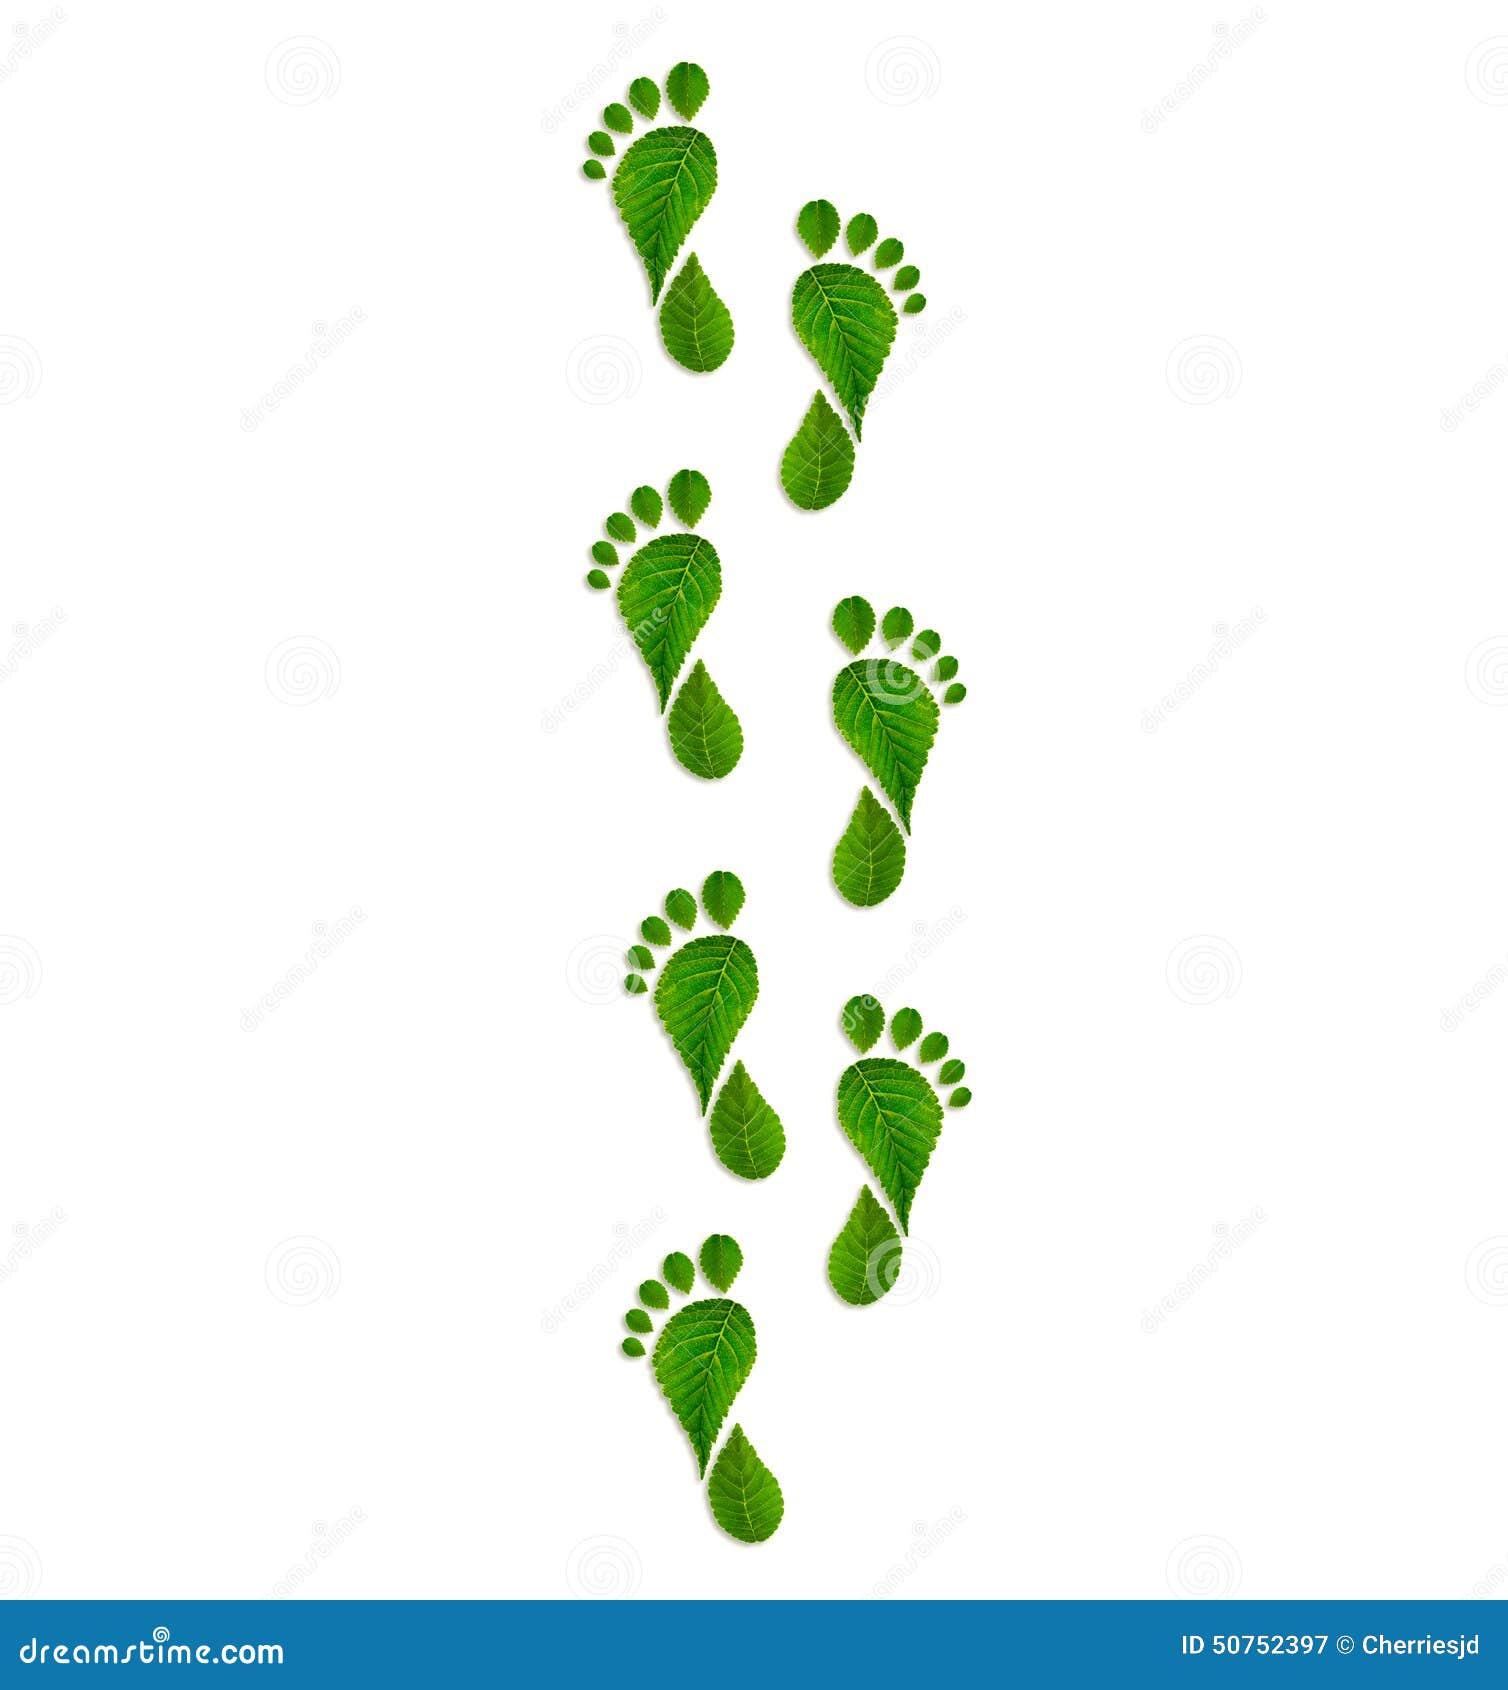 green leaves footprint